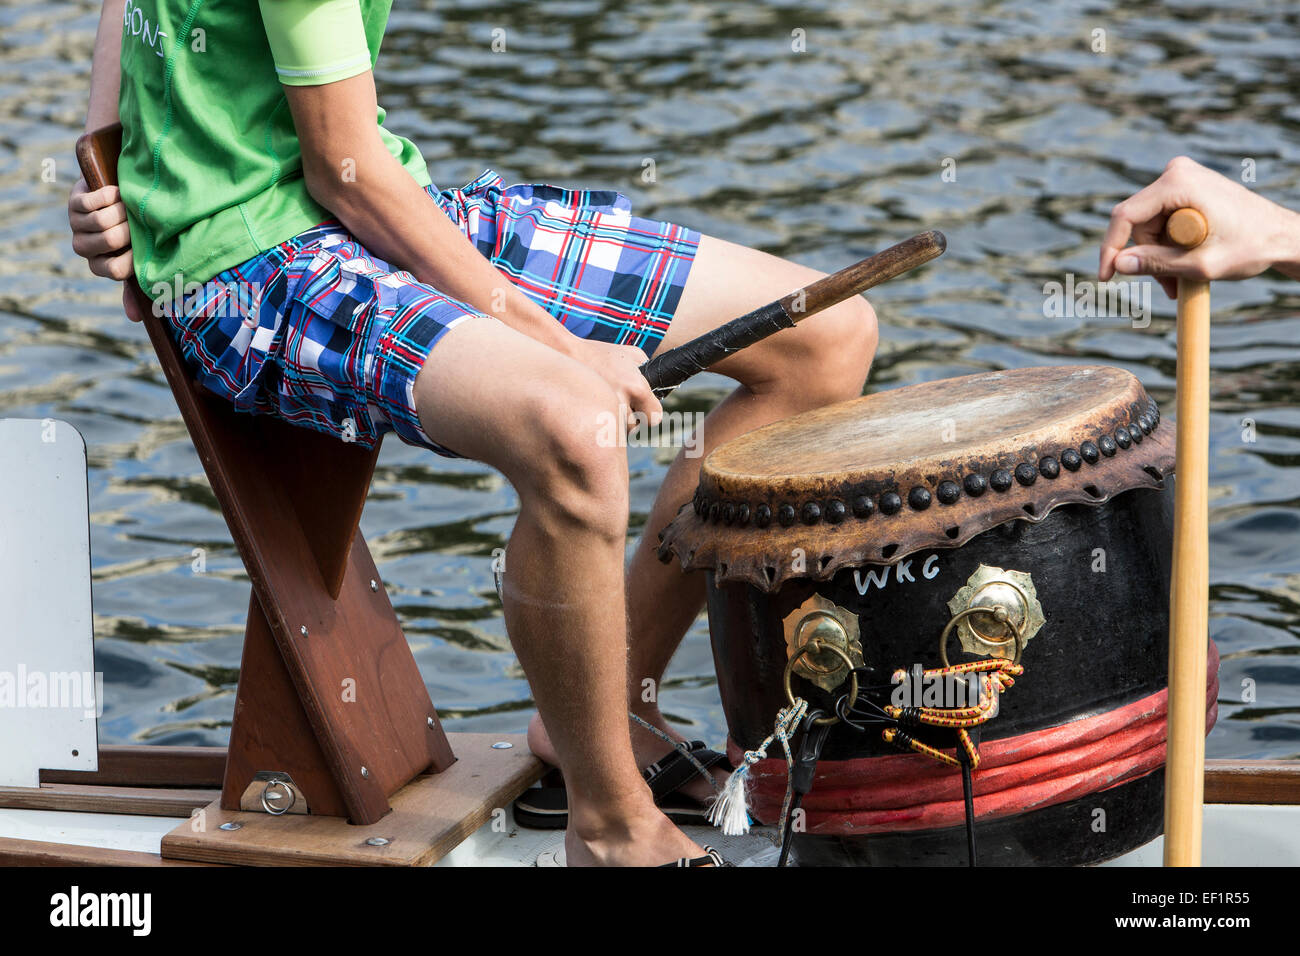 Dragon Boat Race, tournoi sur la rivière Ruhr, à Mülheim, Allemagne Banque D'Images